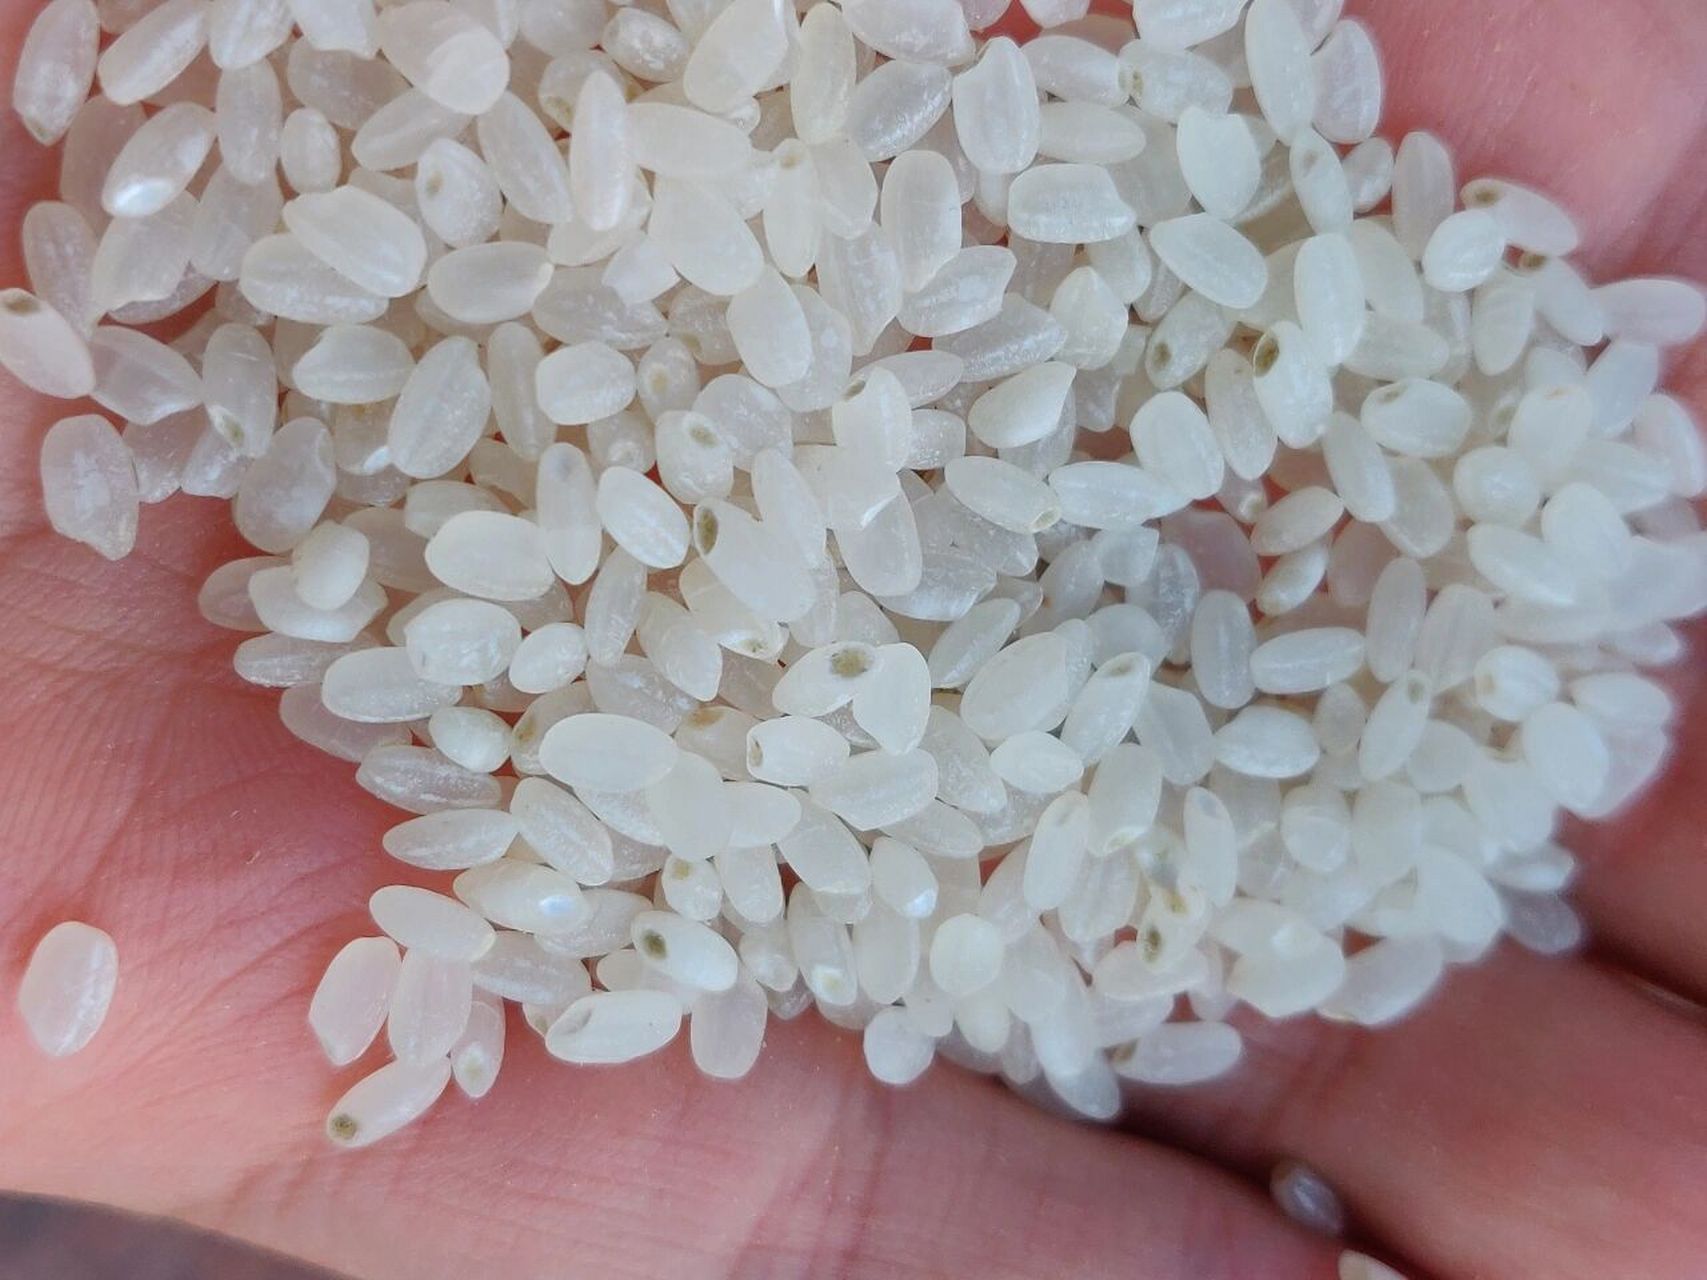 这样的大米还能吃吗? 发霉发绿的大米洗洗蒸了还能吃吗?